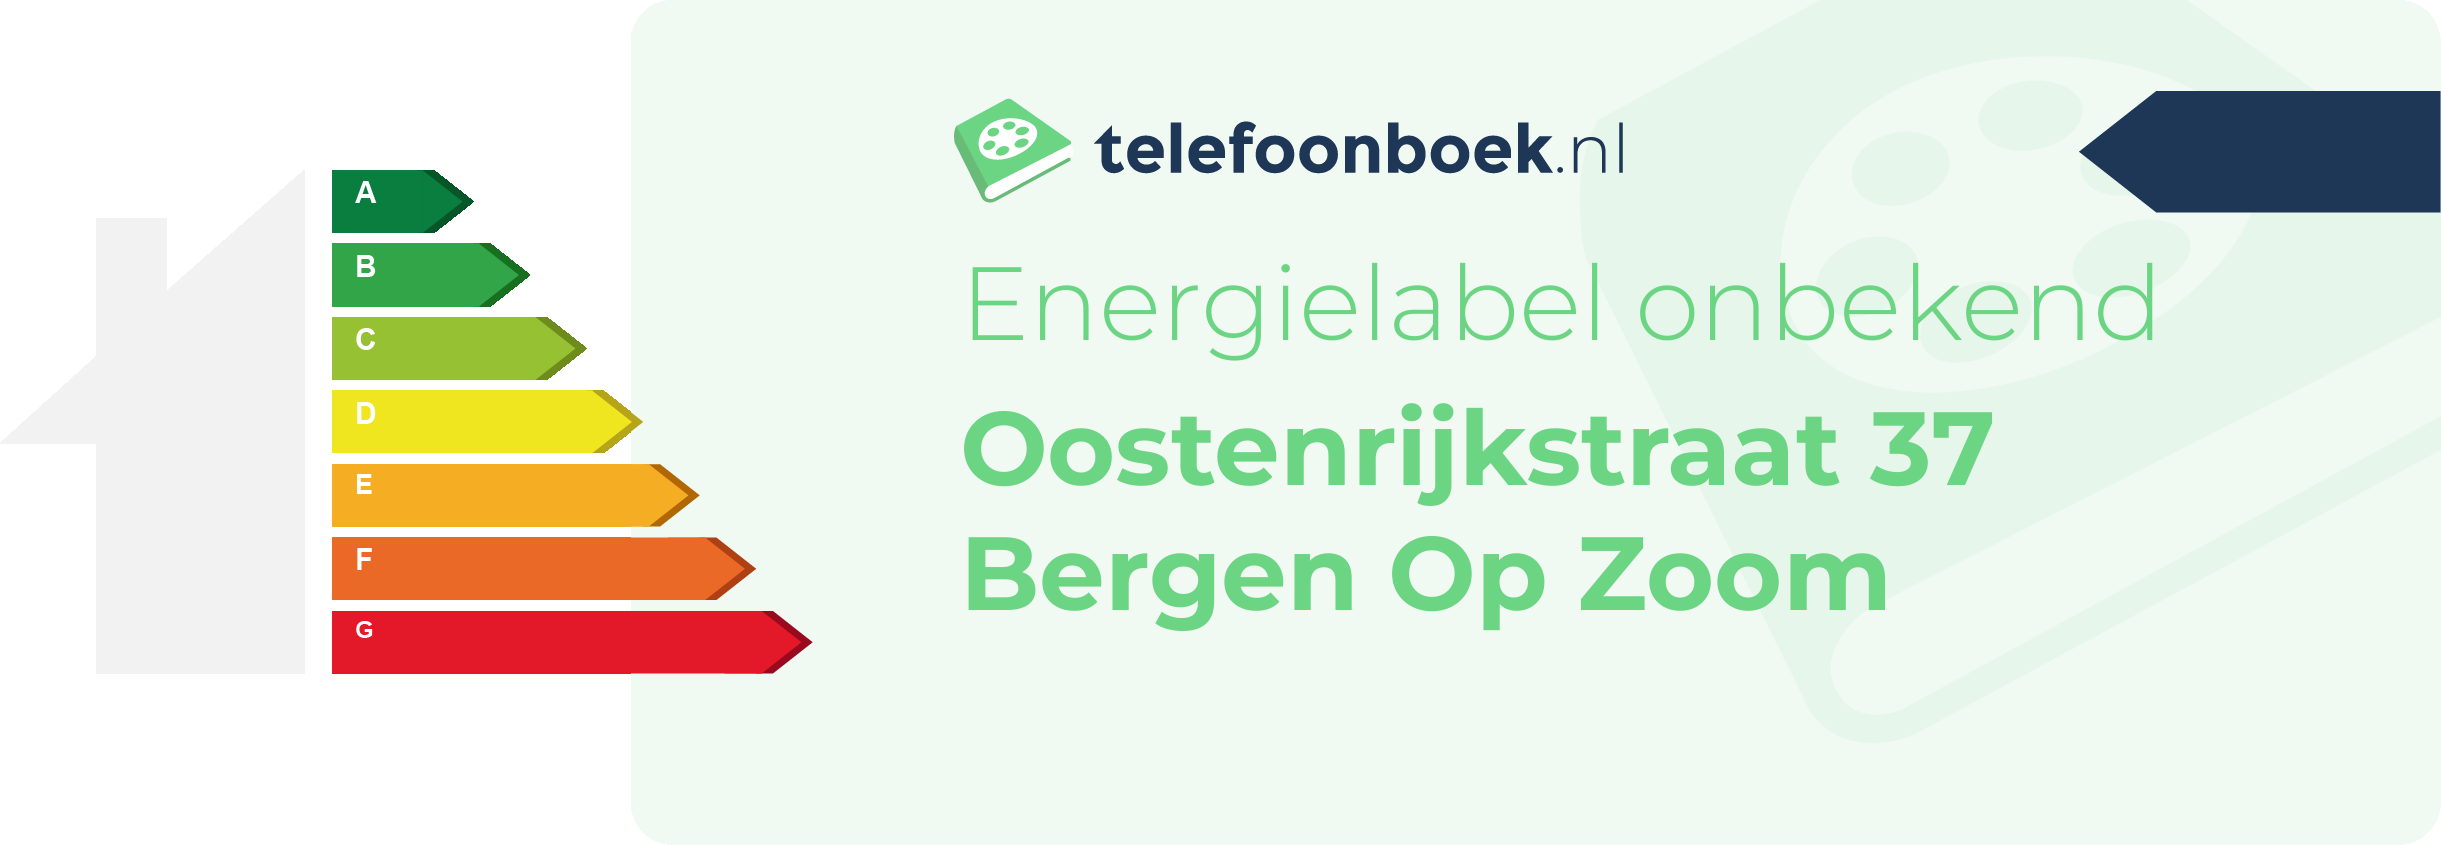 Energielabel Oostenrijkstraat 37 Bergen Op Zoom